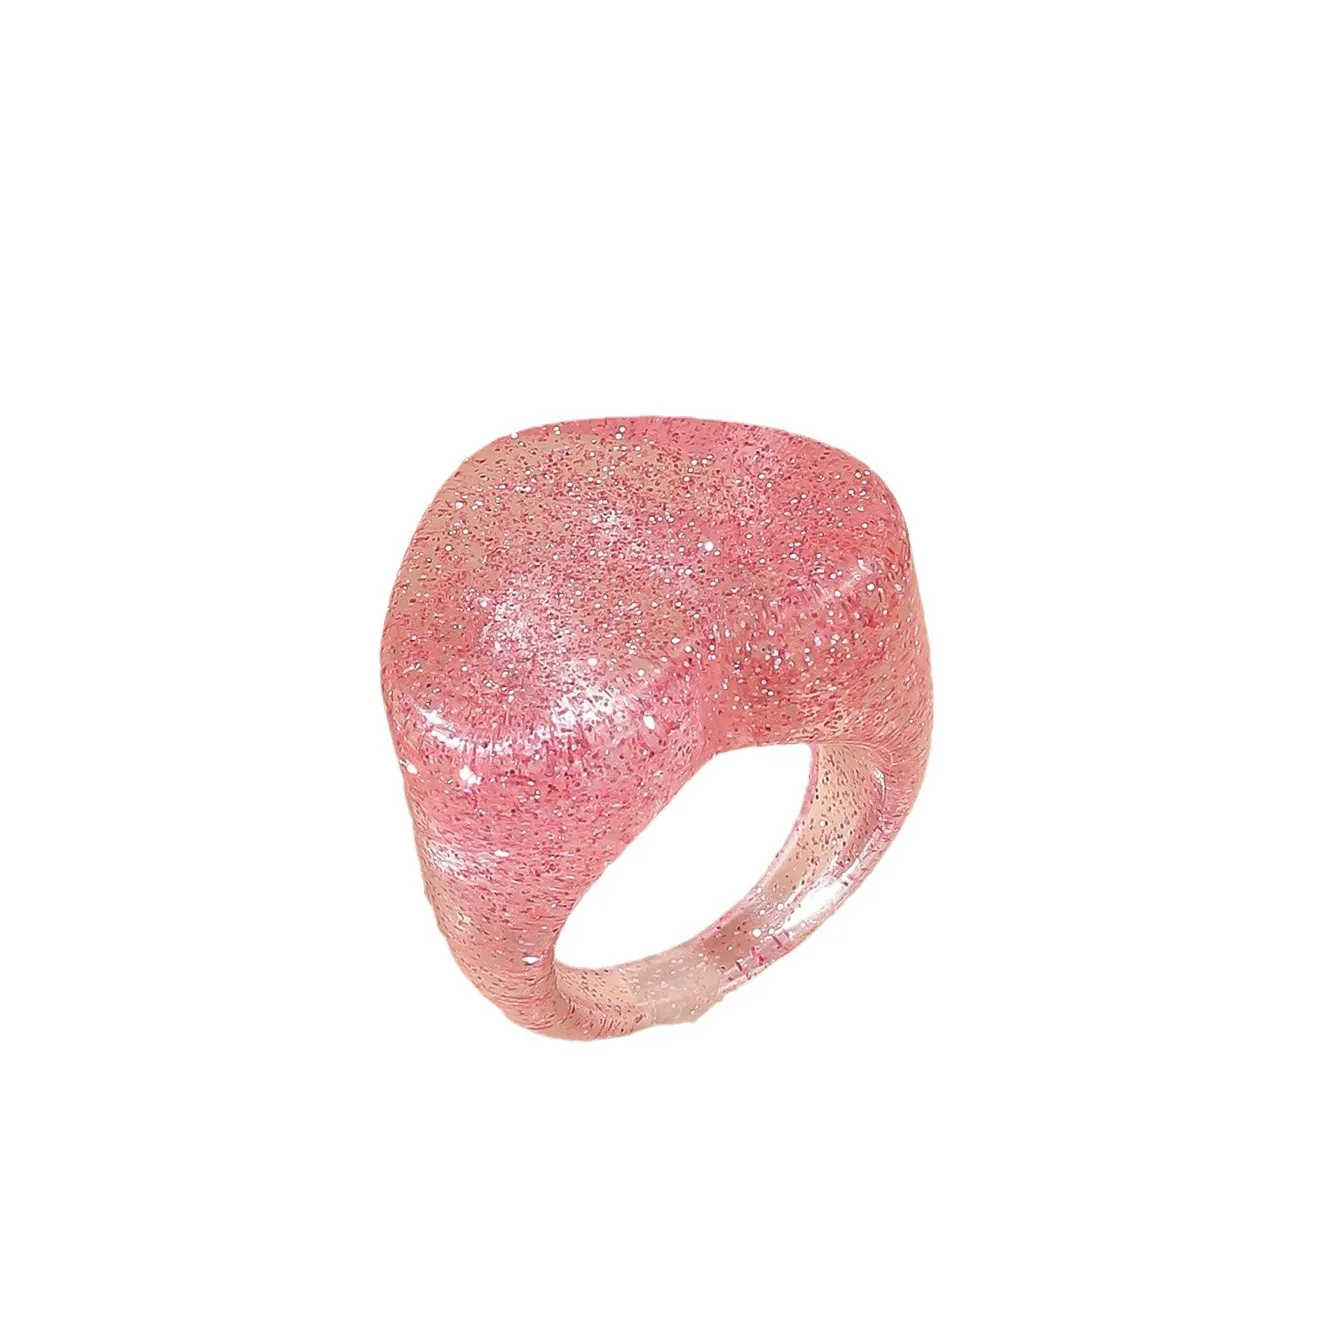 NOUVEAU ROSE PINK LOVE RESIN SWEET BIKELRY RING acrylique ne s'est pas fondu unique et haut de gamme